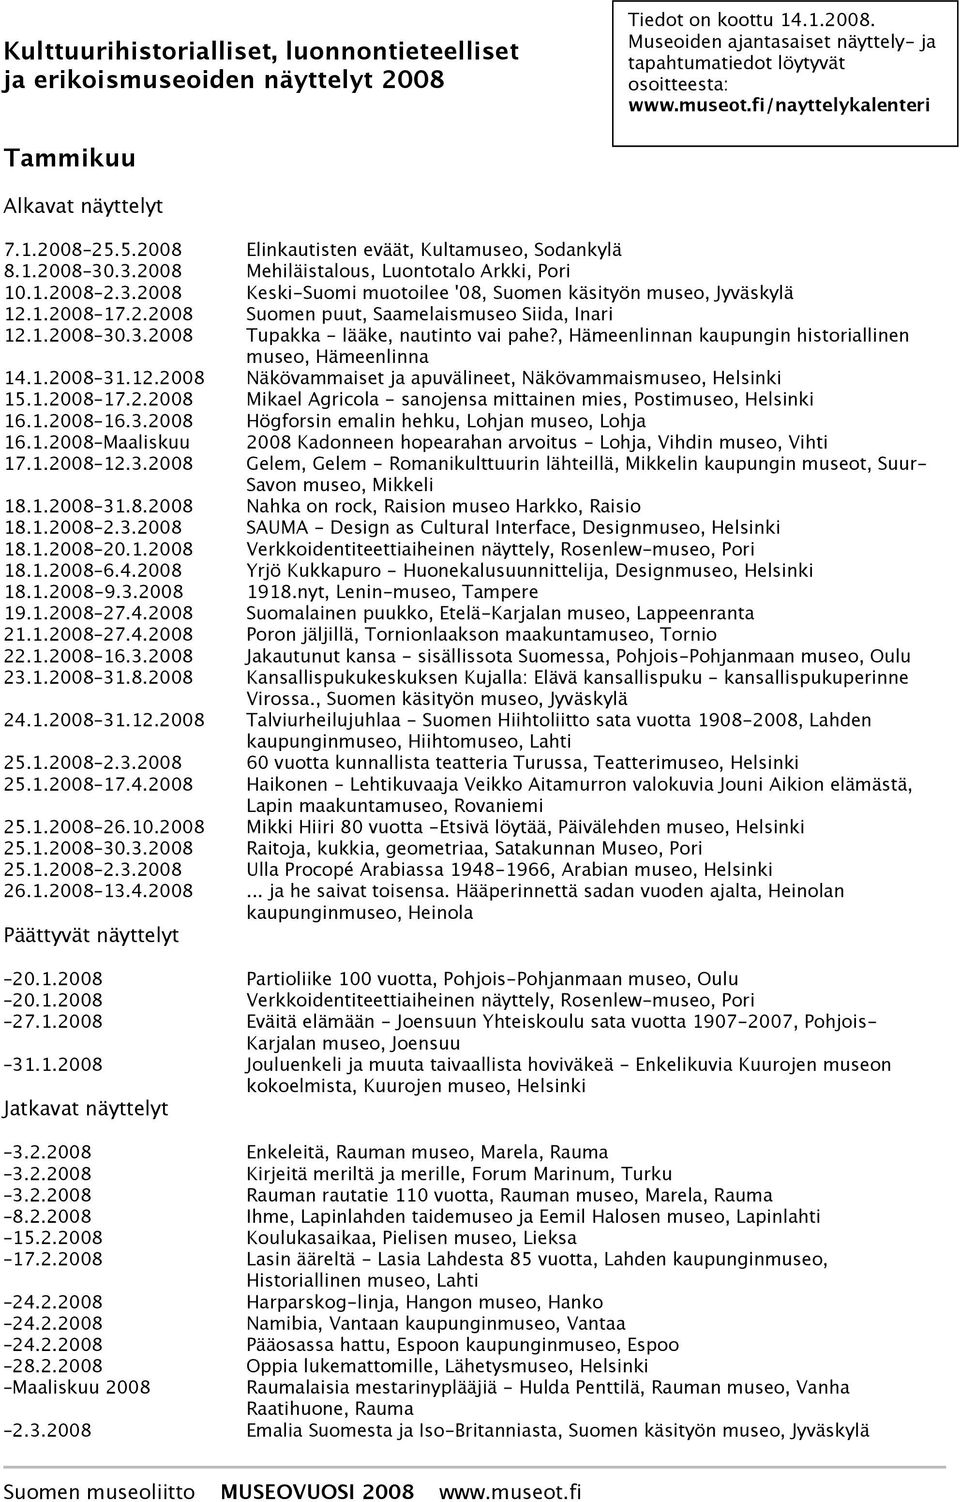 1.2008 17.2.2008 Suomen puut, Saamelaismuseo Siida, Inari 12.1.2008 30.3.2008 Tupakka - lääke, nautinto vai pahe?, Hämeenlinnan kaupungin historiallinen museo, Hämeenlinna 14.1.2008 31.12.2008 Näkövammaiset ja apuvälineet, Näkövammais 15.